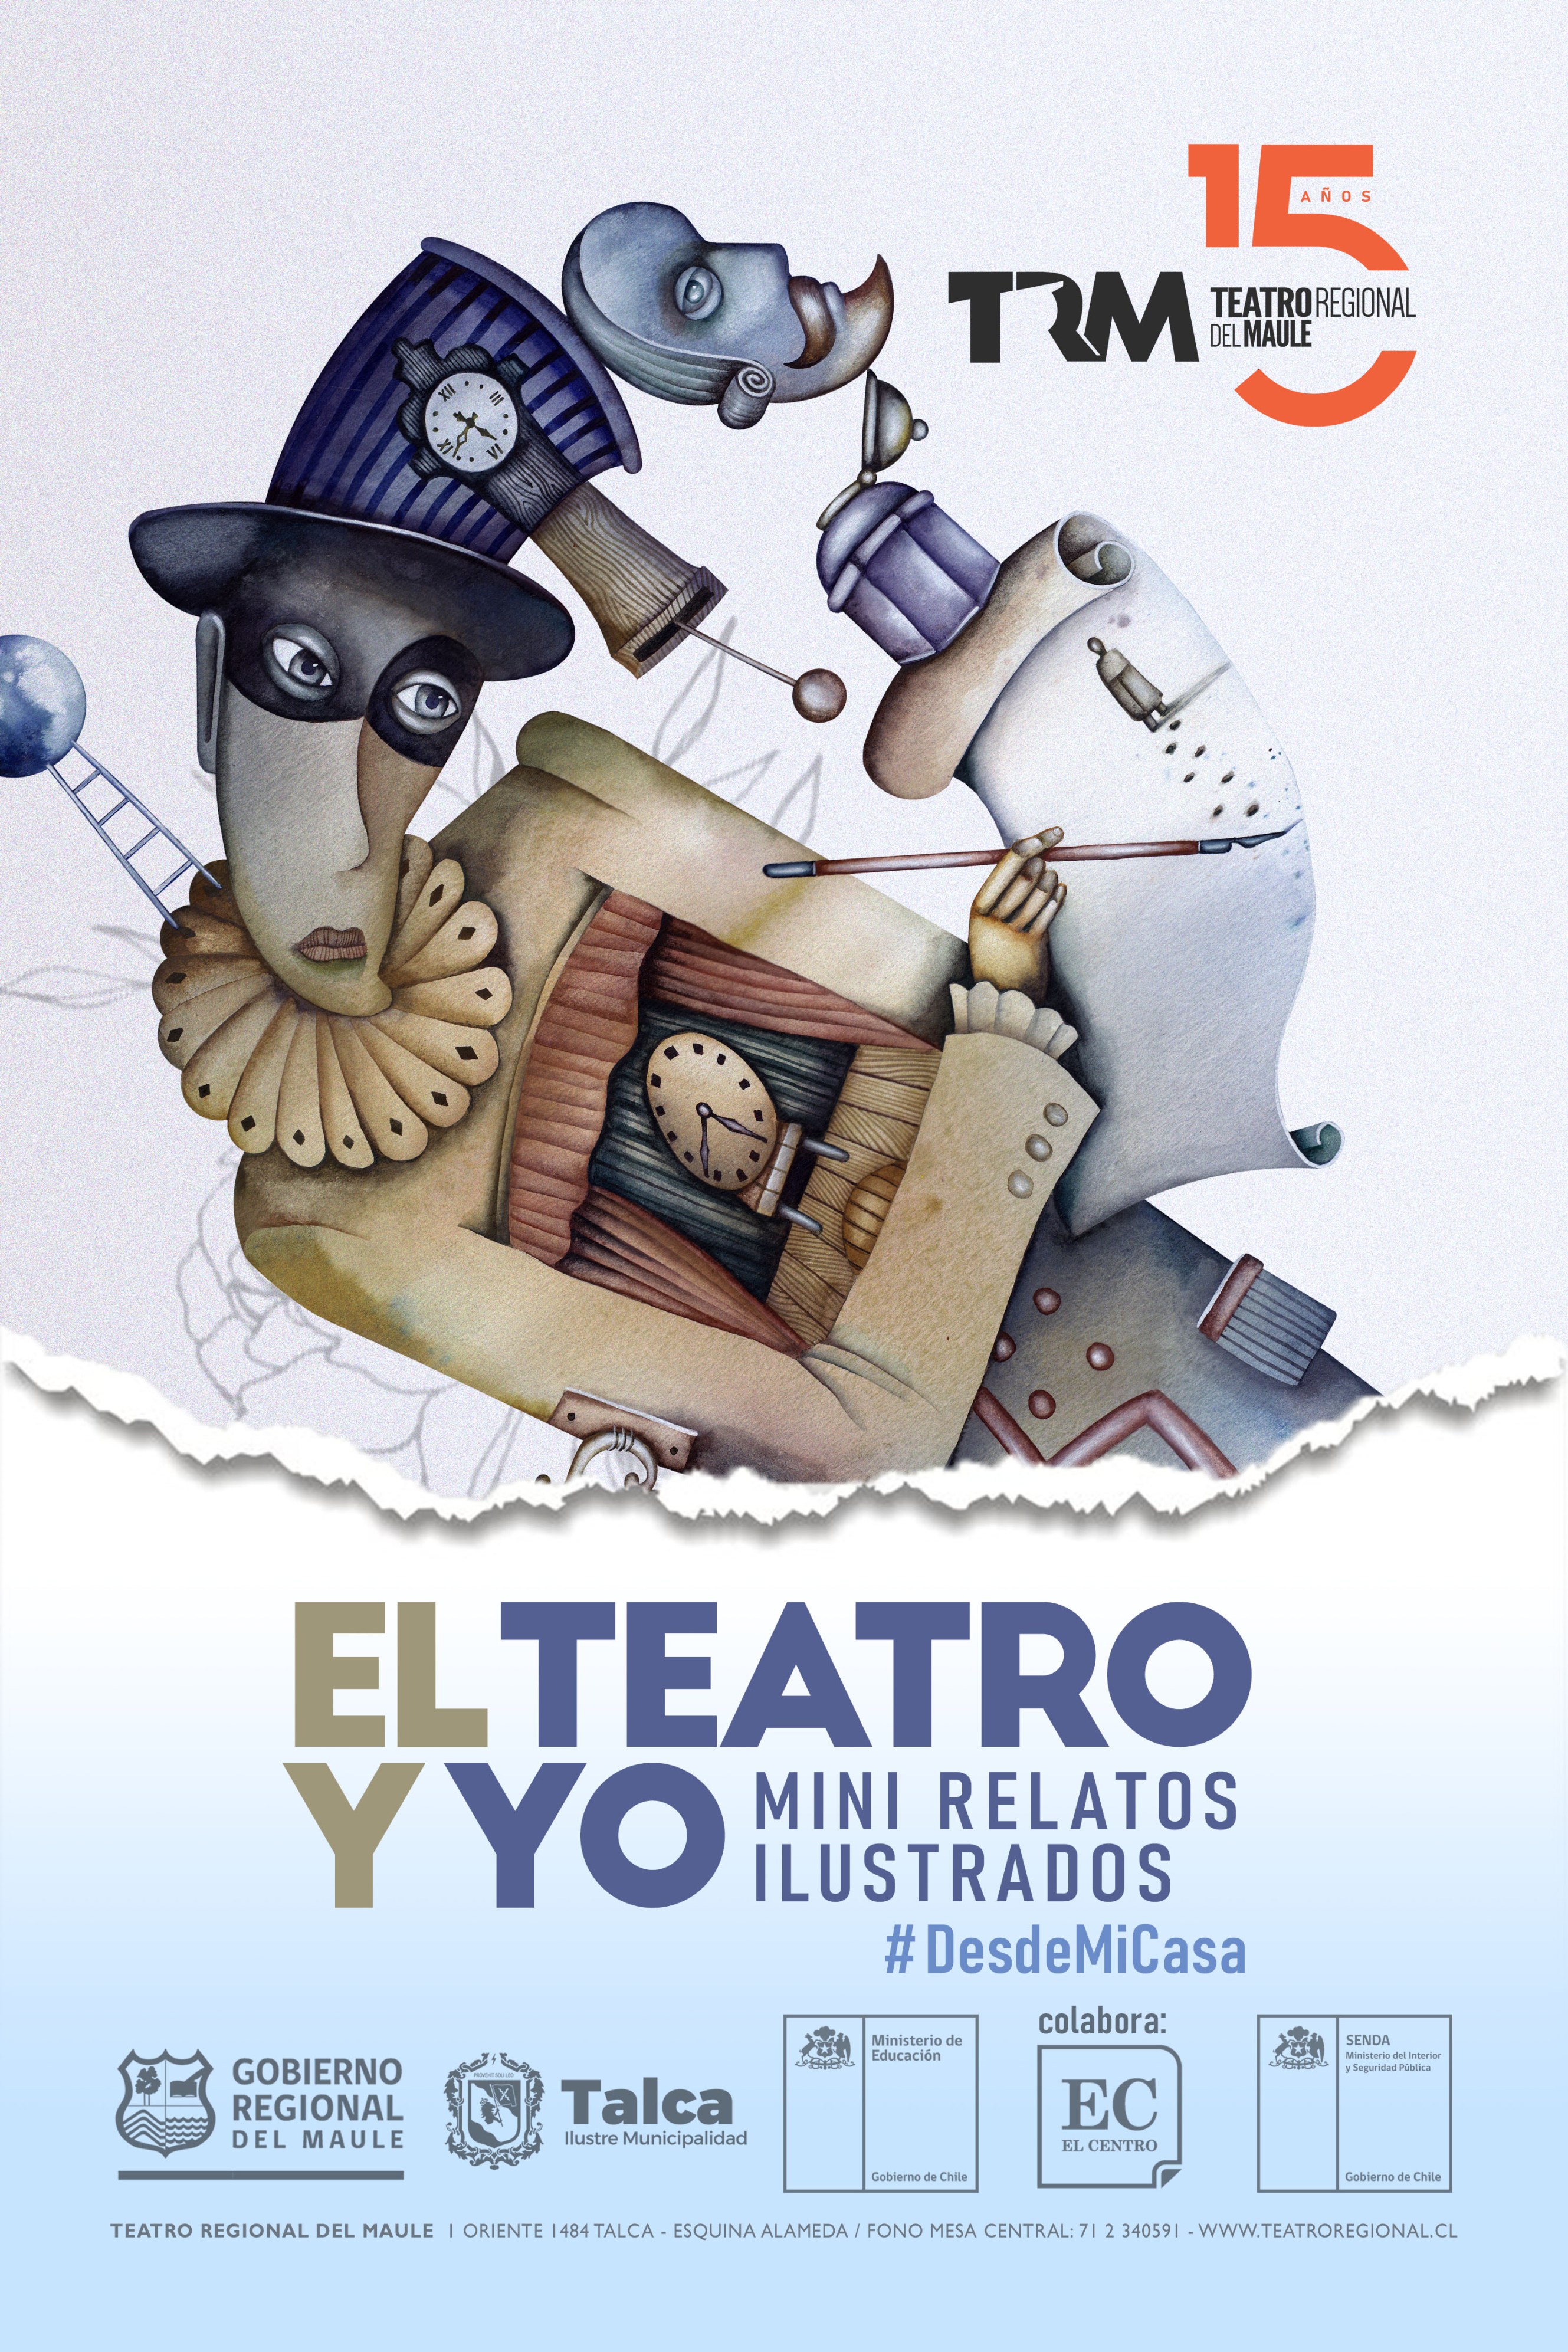 Teatro Regional del Maule lanza concurso “El teatro y yo” para que estudiantes cuenten su experiencia con el recinto